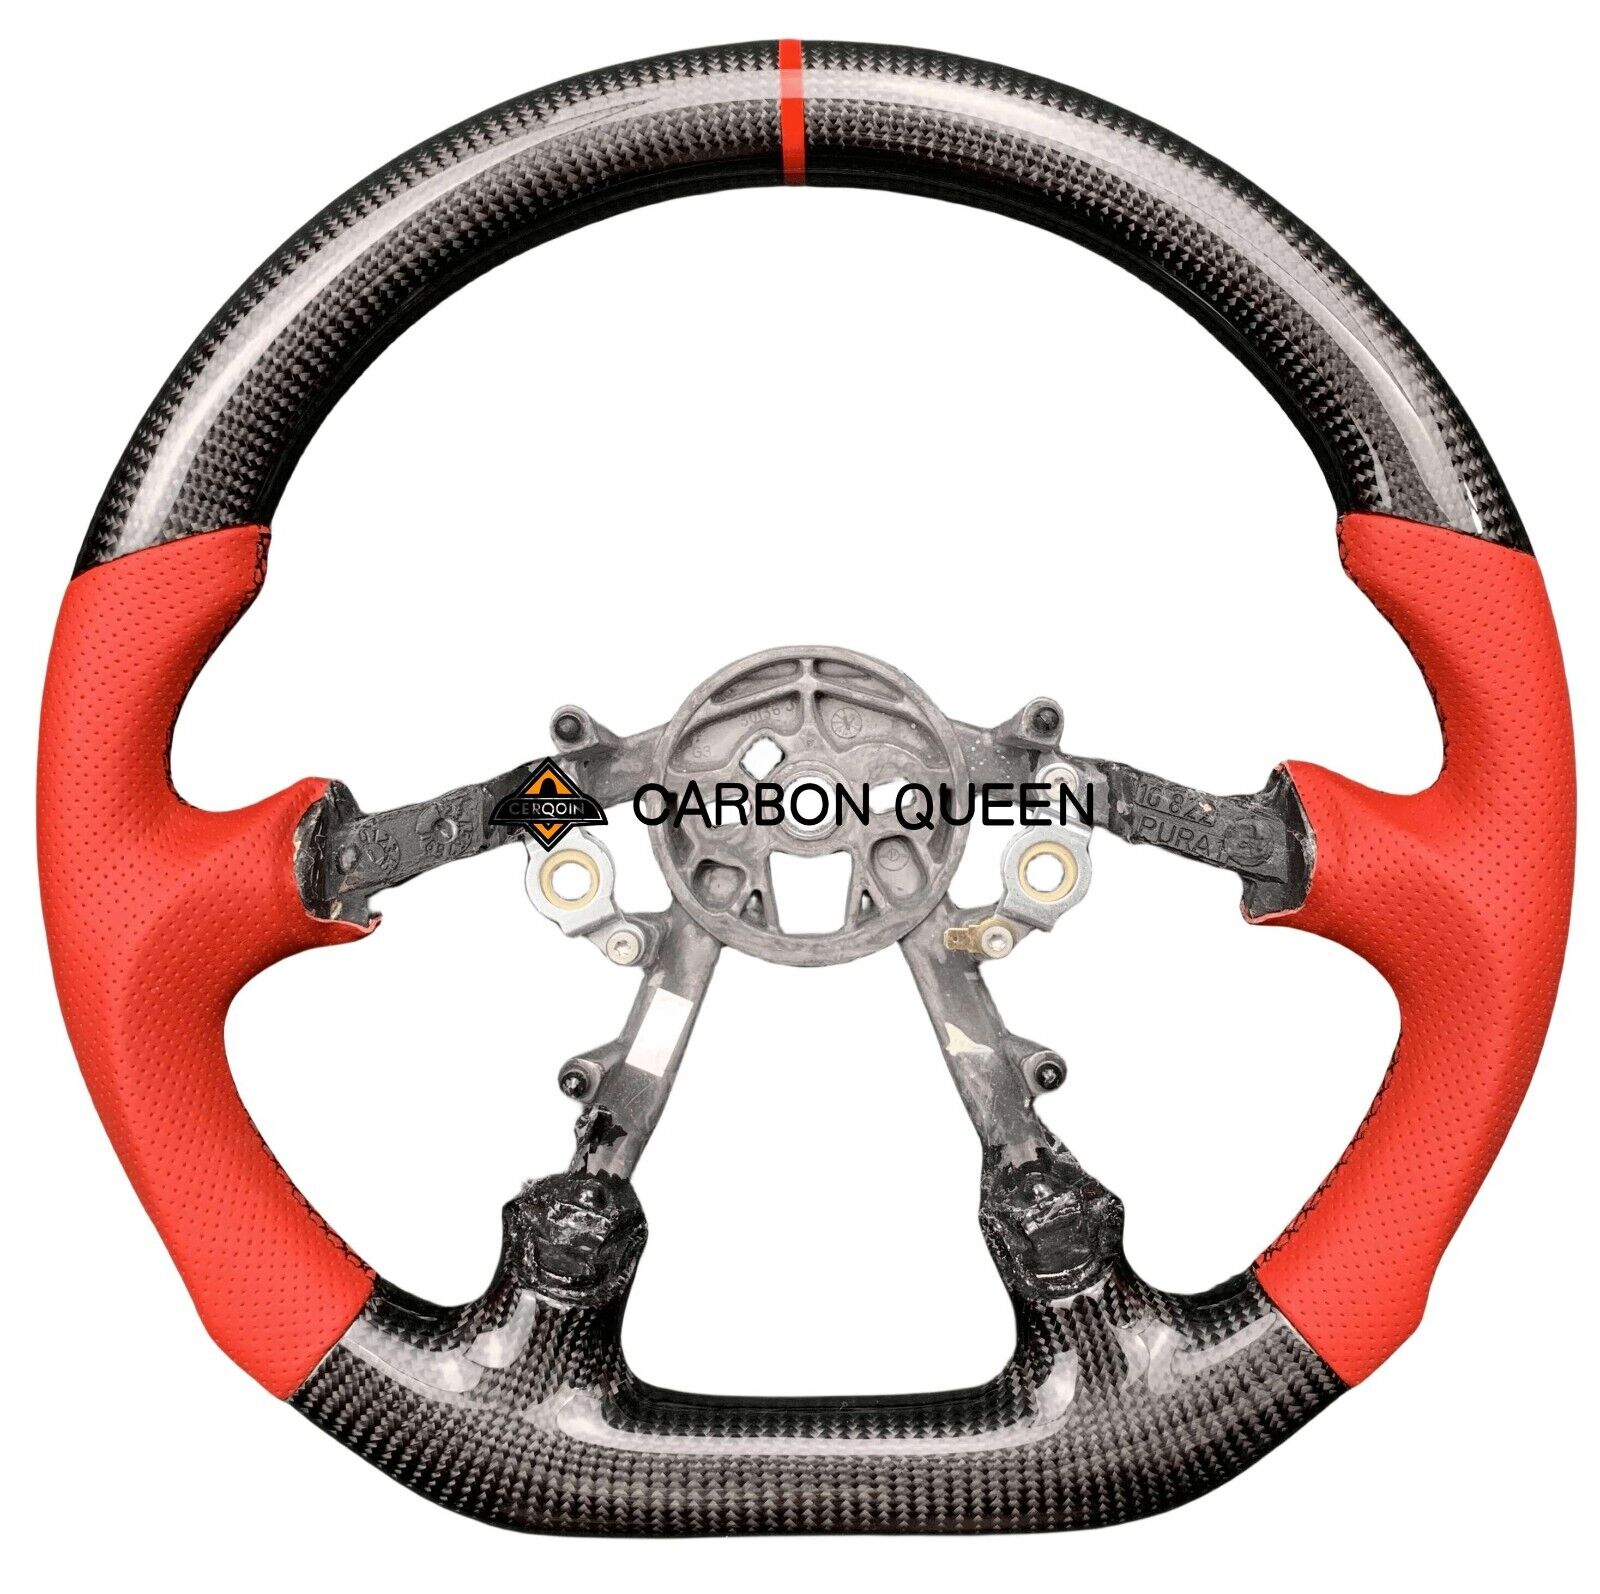 REAL CARBON FIBER Steering Wheel FOR Chevrolet Corvette C5 Z06 97-04 YEARS